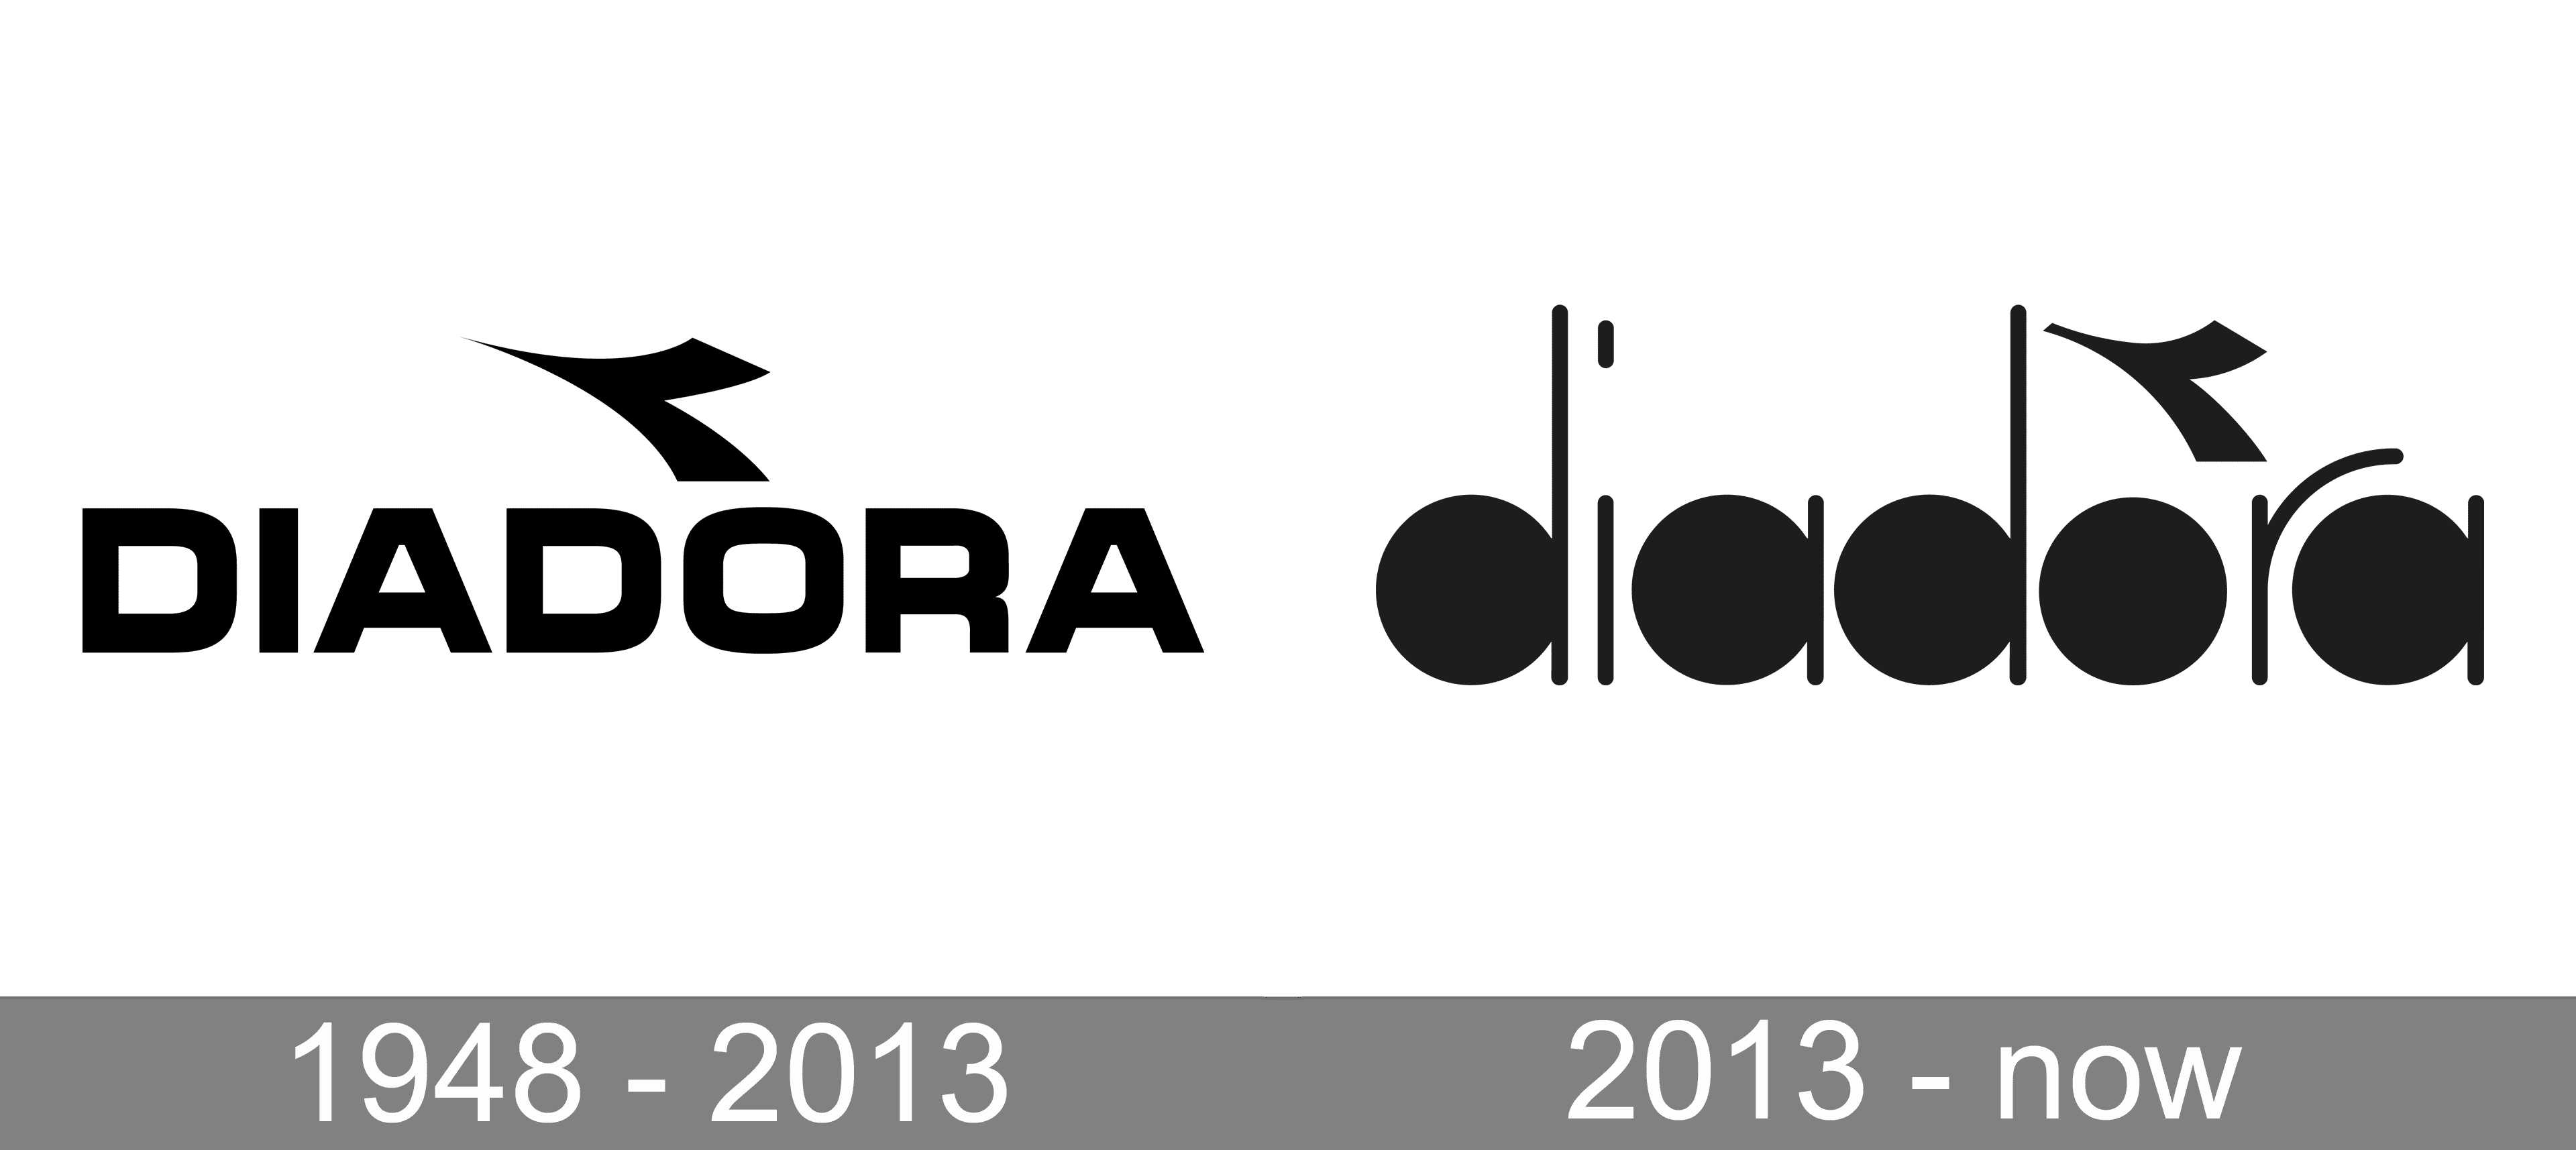 Diadora Logo Significado Del Logotipo, Png, Vector | jassaldriving.com